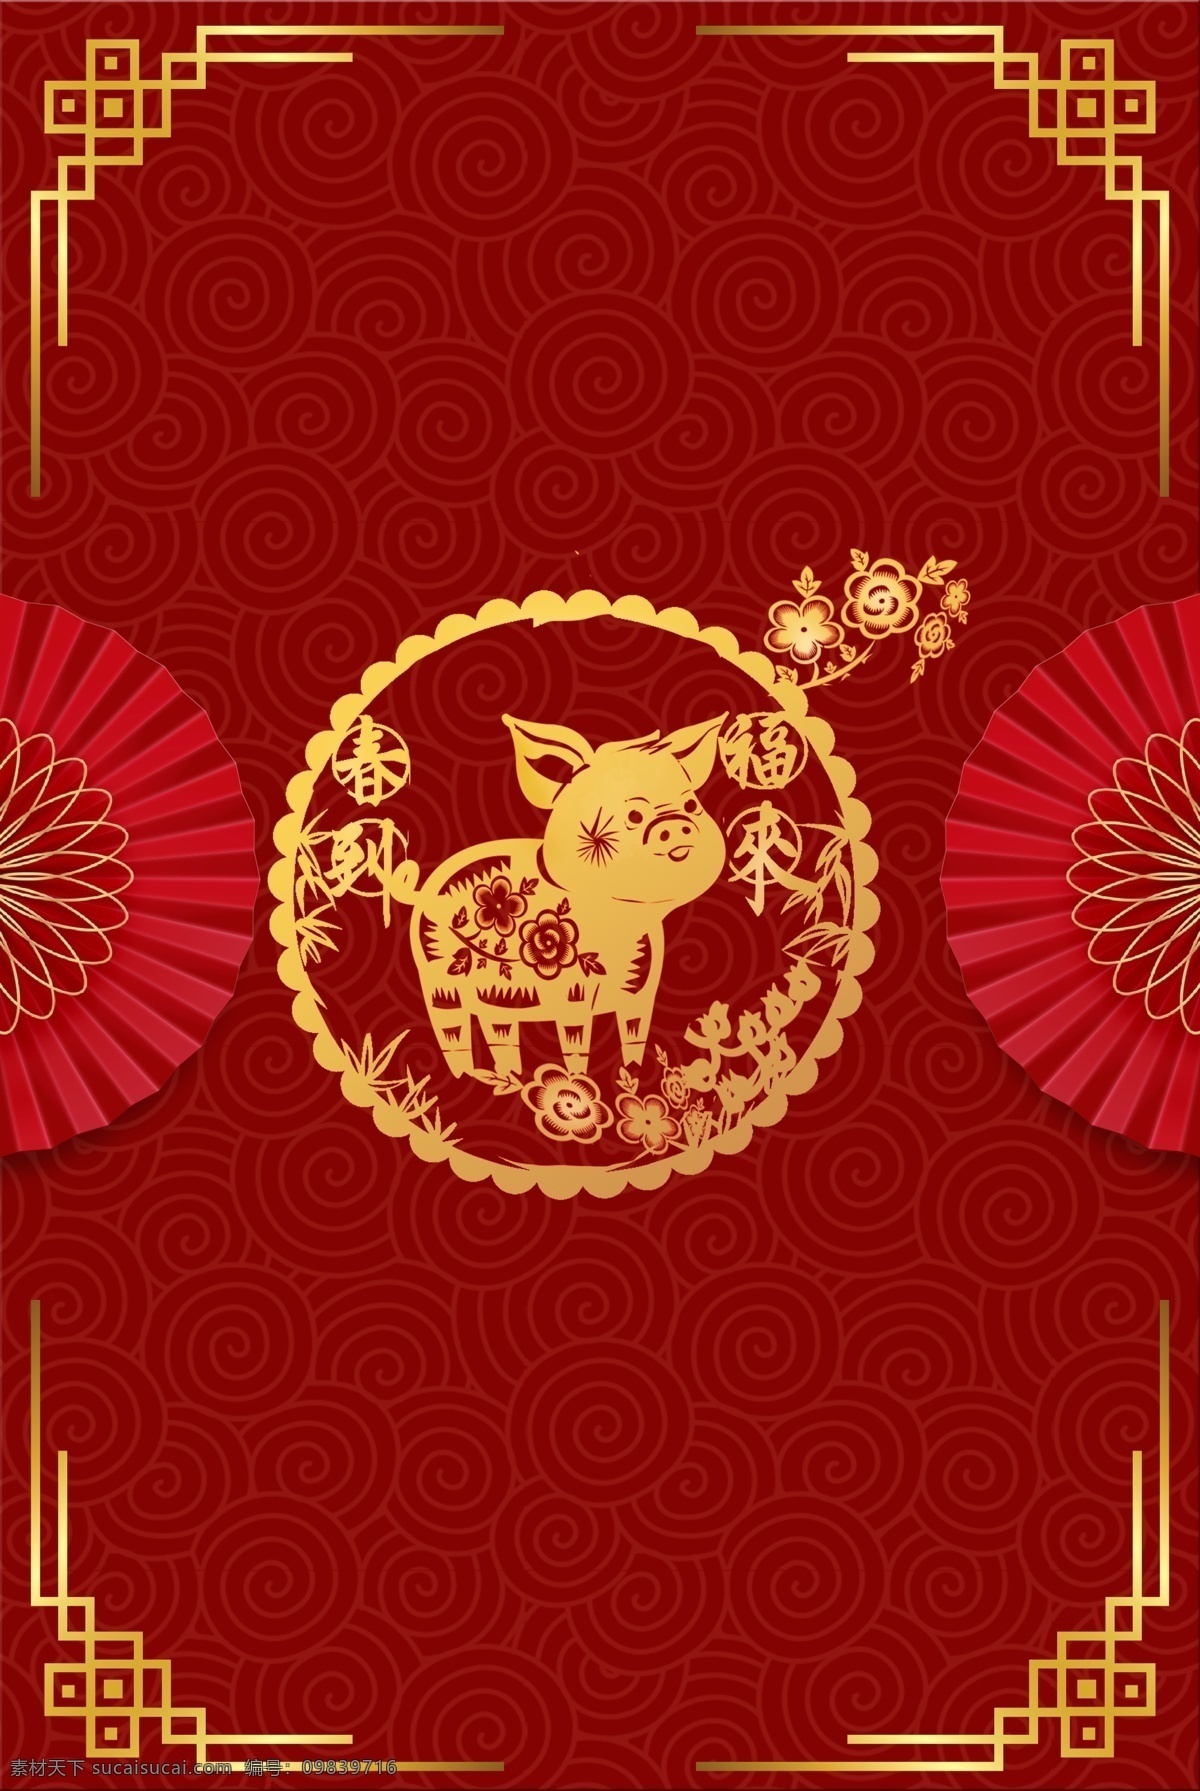 金 猪 贺春 春节 背景 图 金猪 背景图 红色 螺旋纹理 金色纹理 福来春到 海报 新年 2019 幸福 温暖